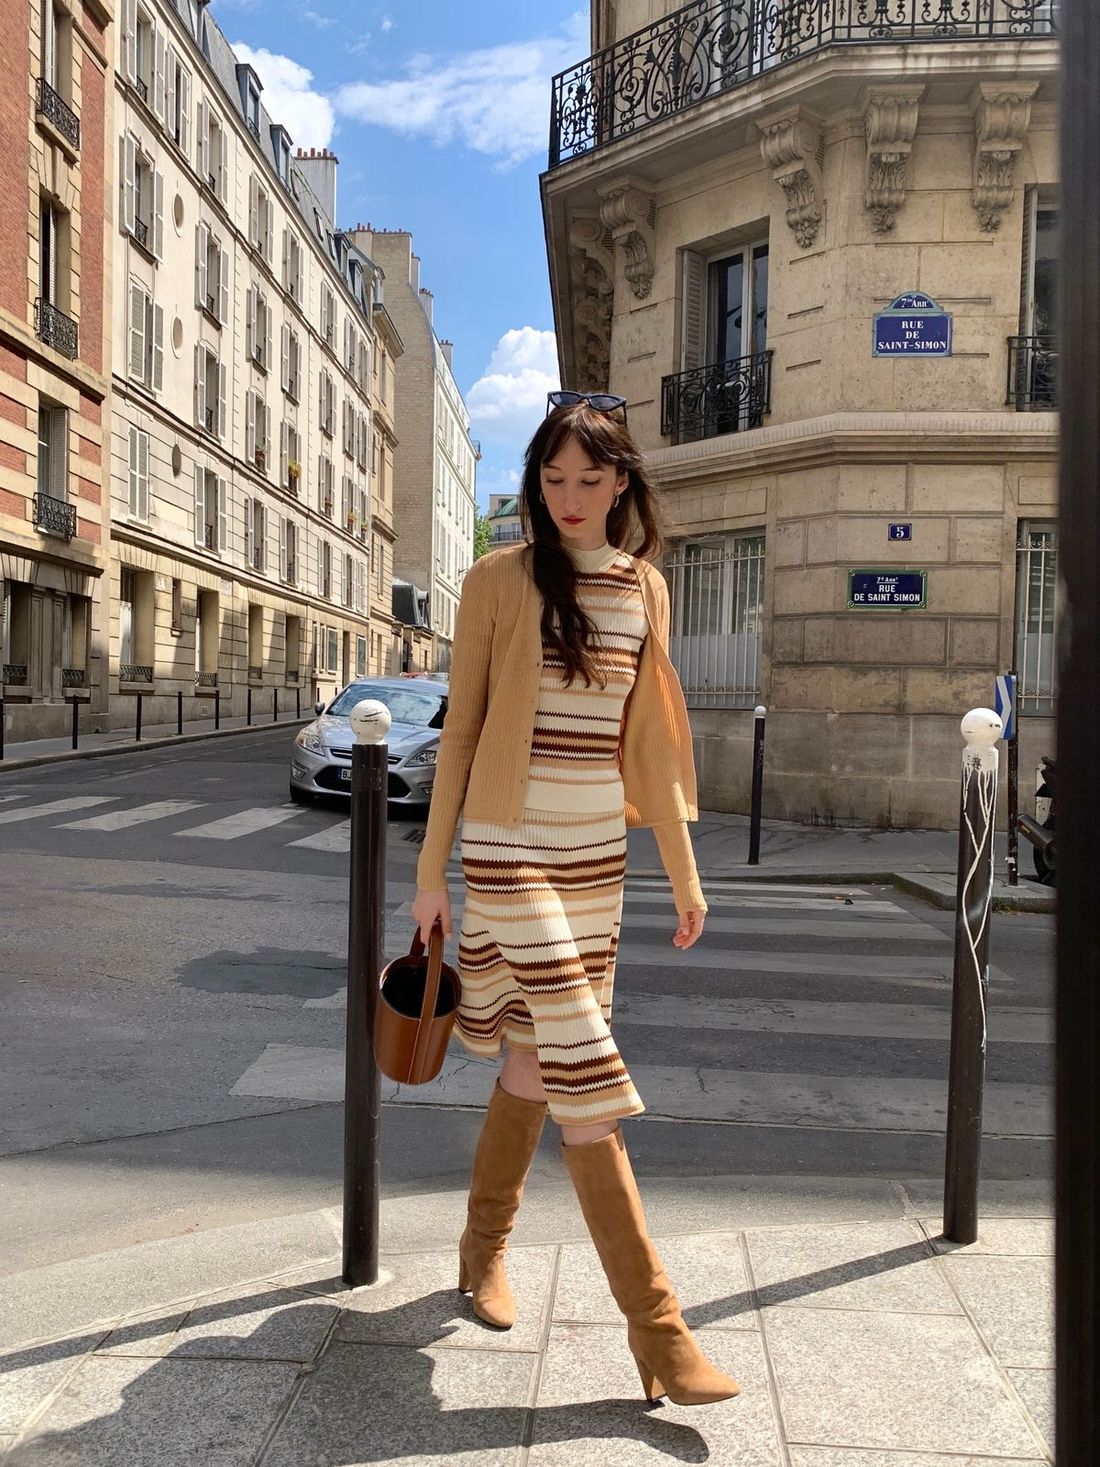 Victoria Petersen wearing Samsoe & Samsoe Spring Maik Top and Skirt in Paris